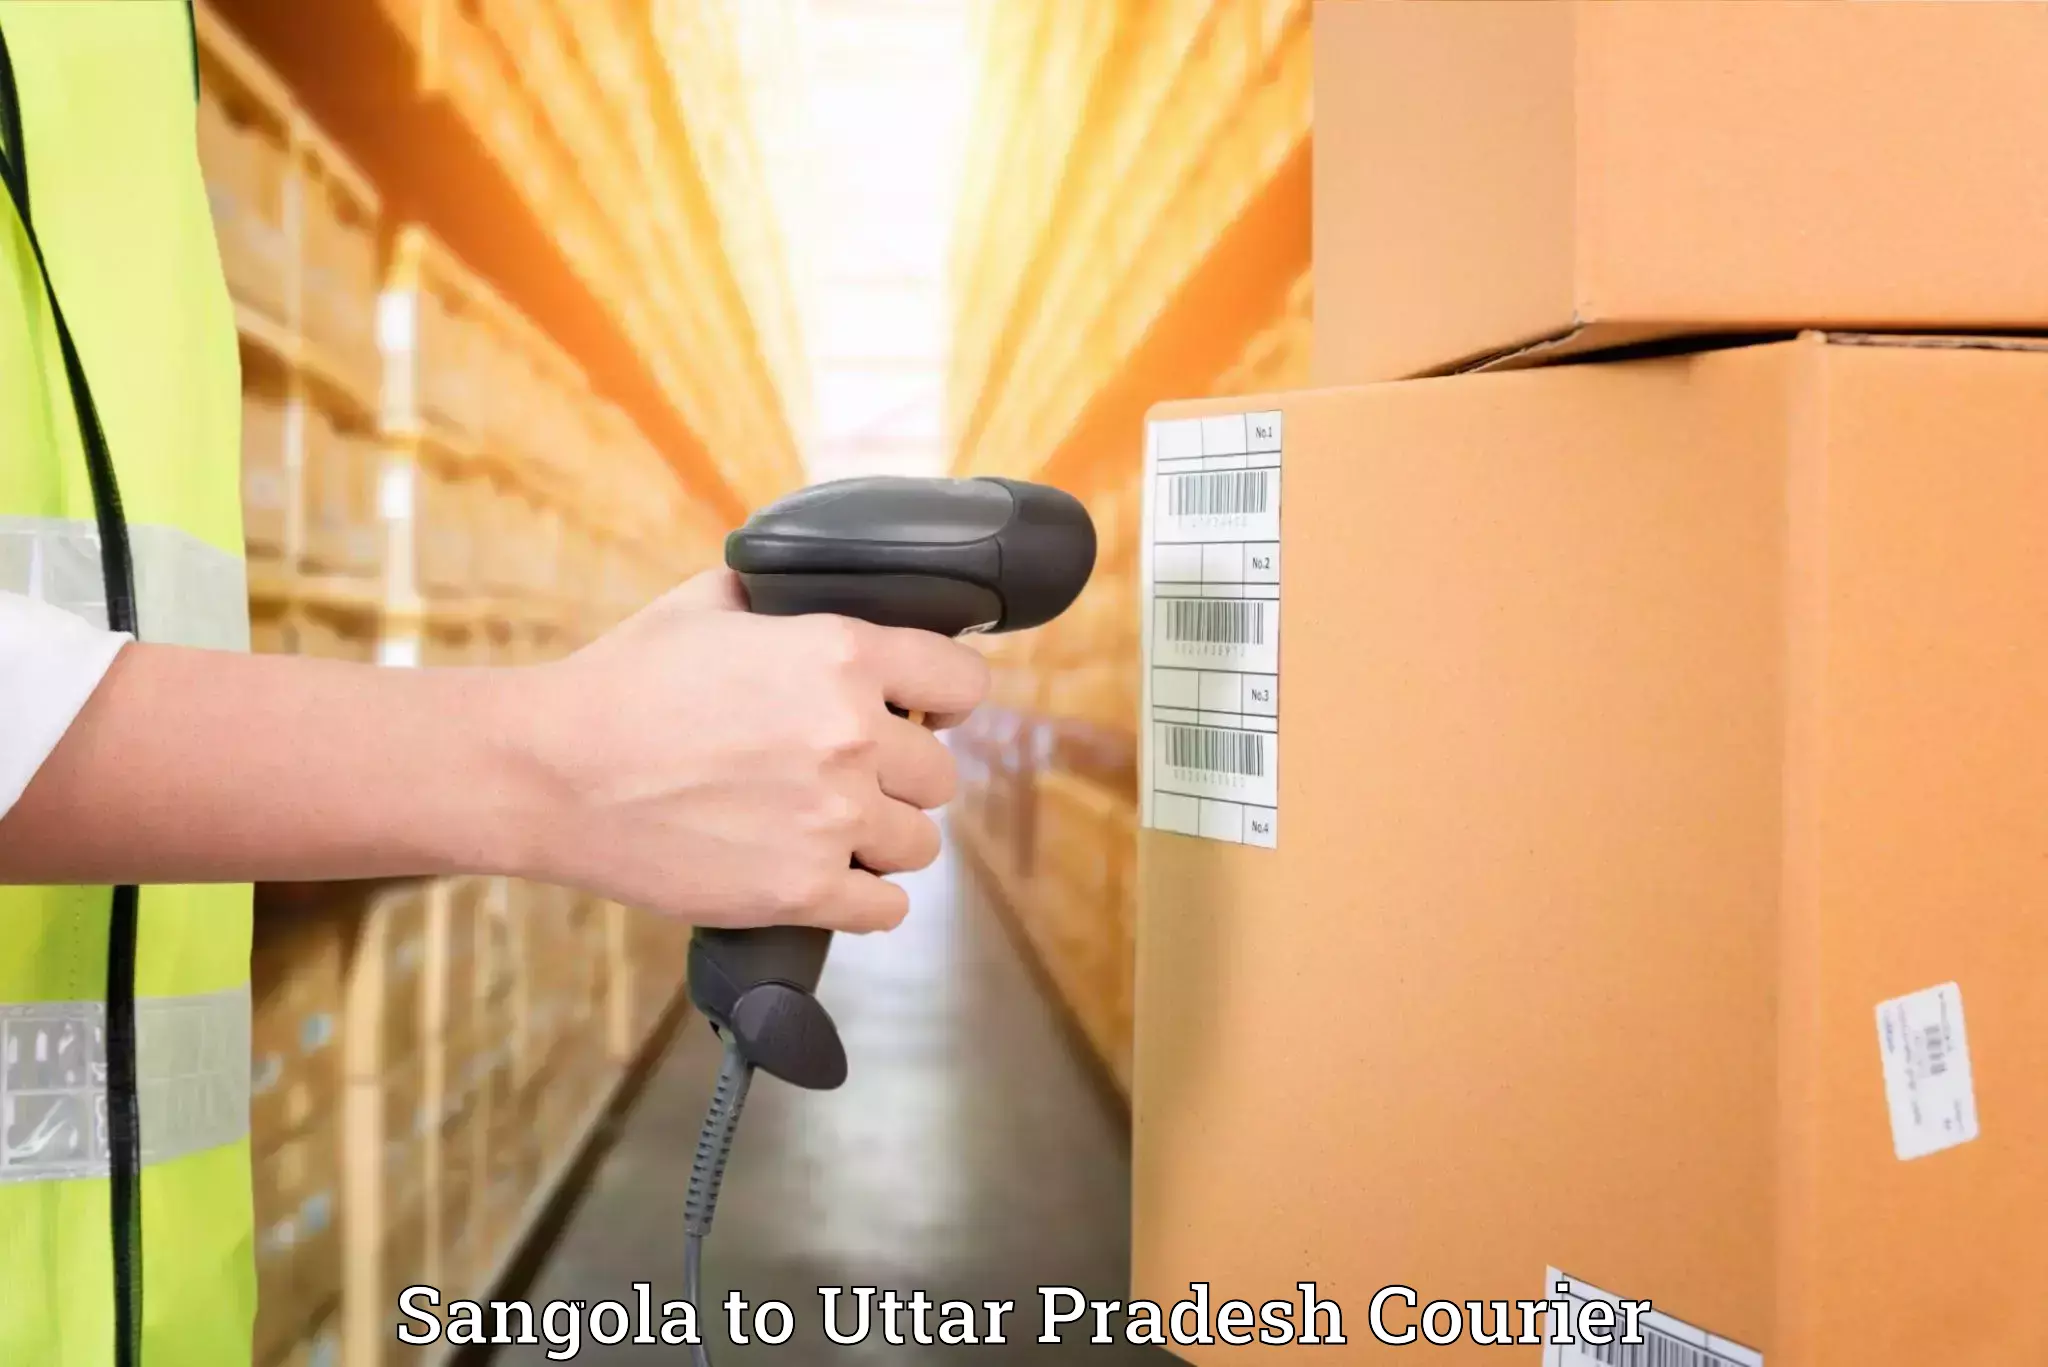 Furniture delivery service Sangola to Fatehgarh